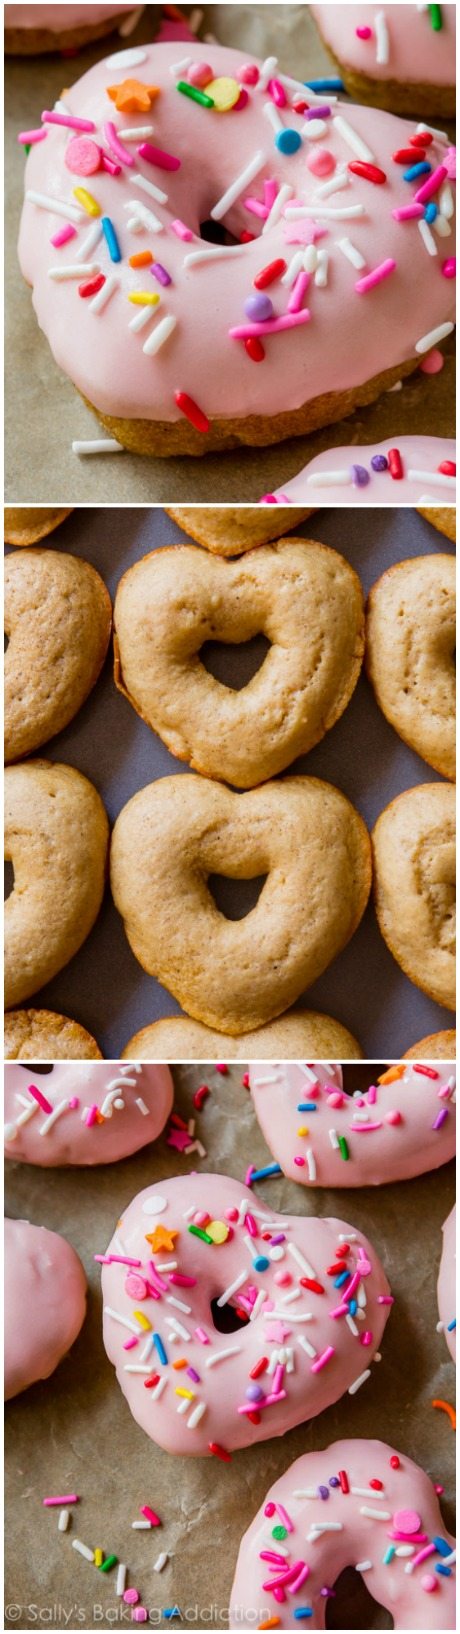 Je suggère de faire deux lots car ces adorables beignets coeur vont disparaître !! Recette de beignet à la vanille au four facile trouvée sur sallysbakingaddiction.com